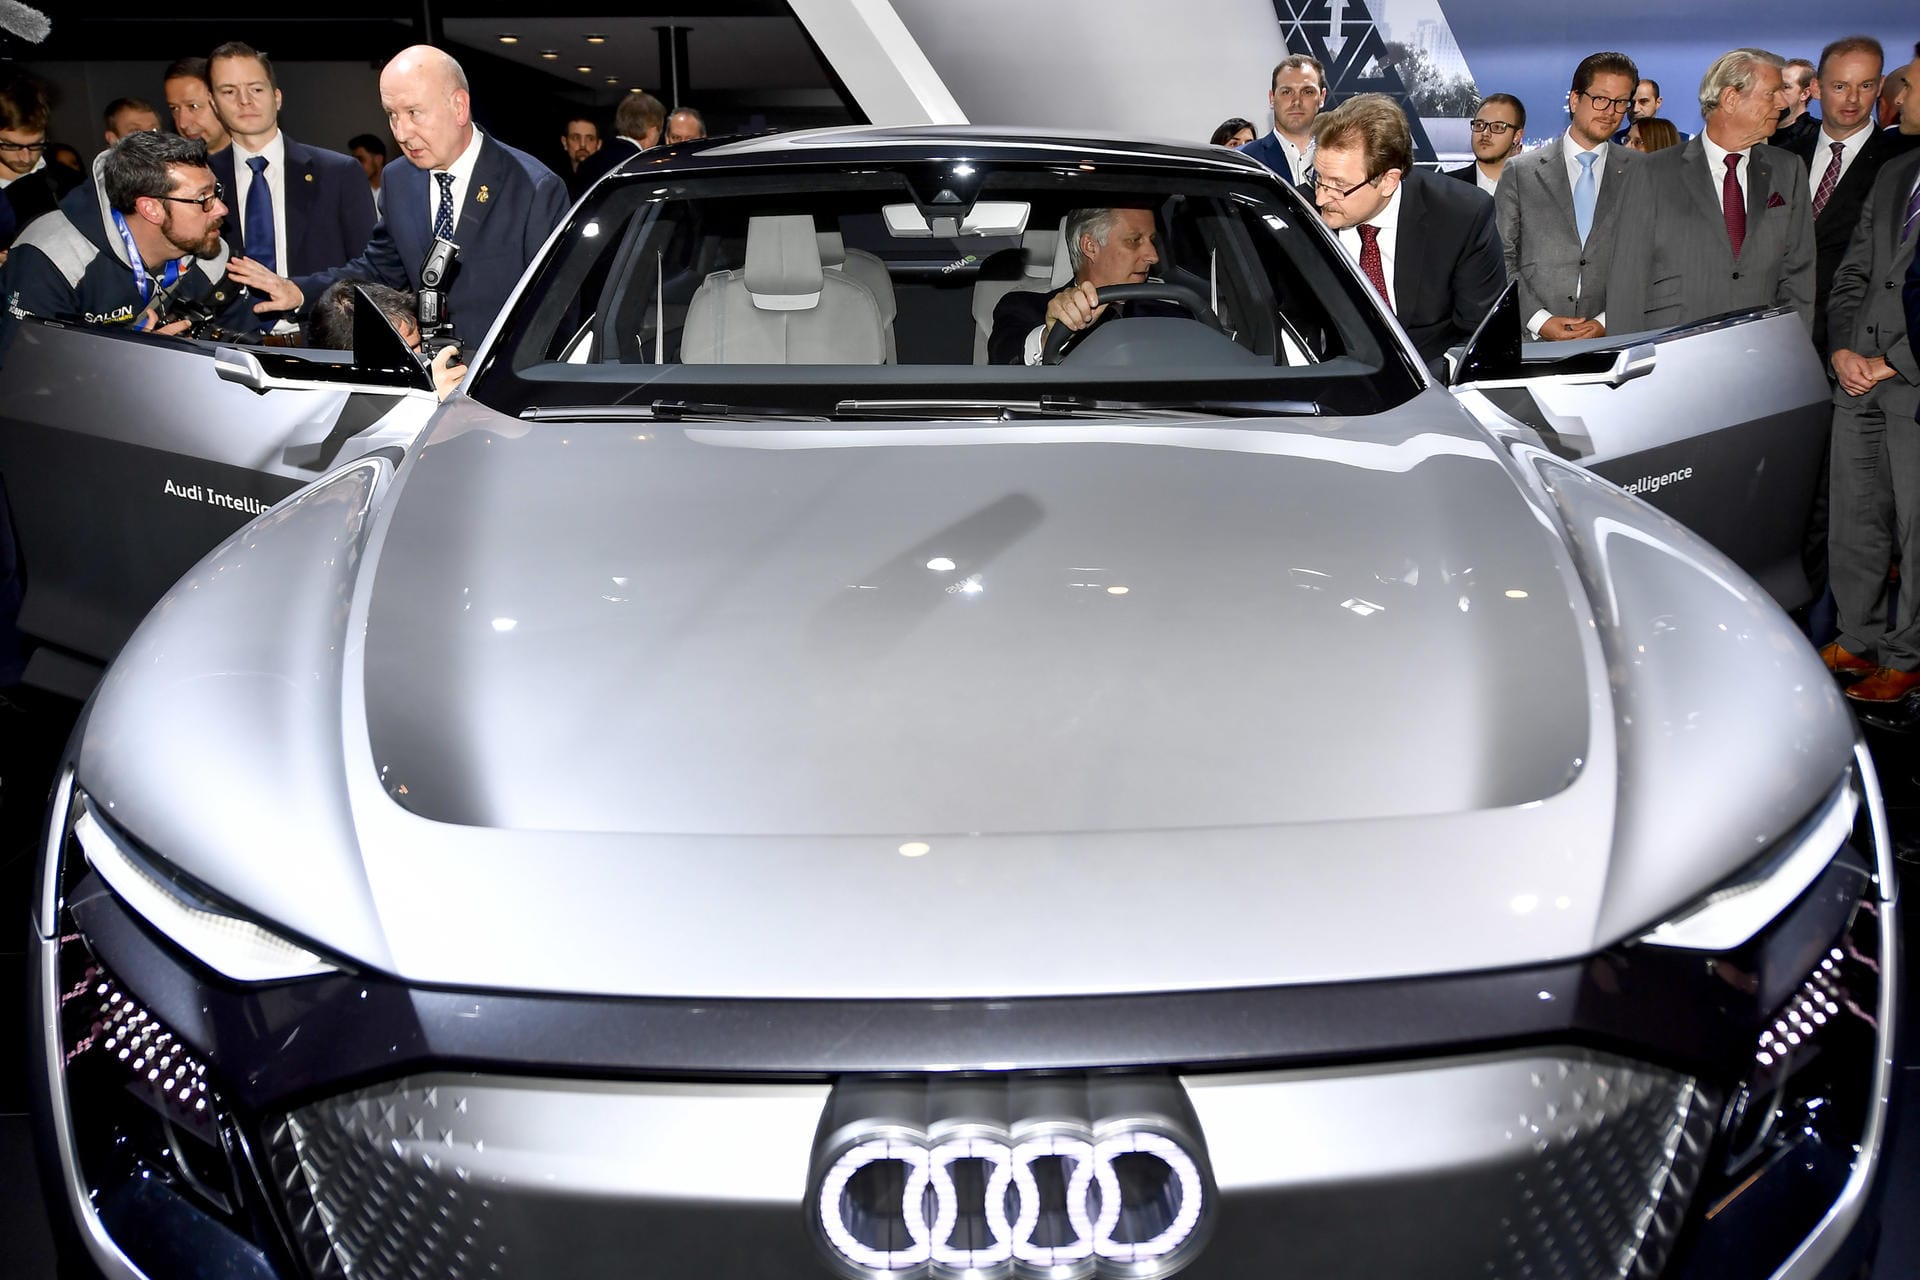 Elektro- und Hybridautos von Audi sind mit dem Namenszusatz "e-tron" versehen. Sprecher des Französischen sind verwundert, bedeutet "étron" doch "Kothaufen".